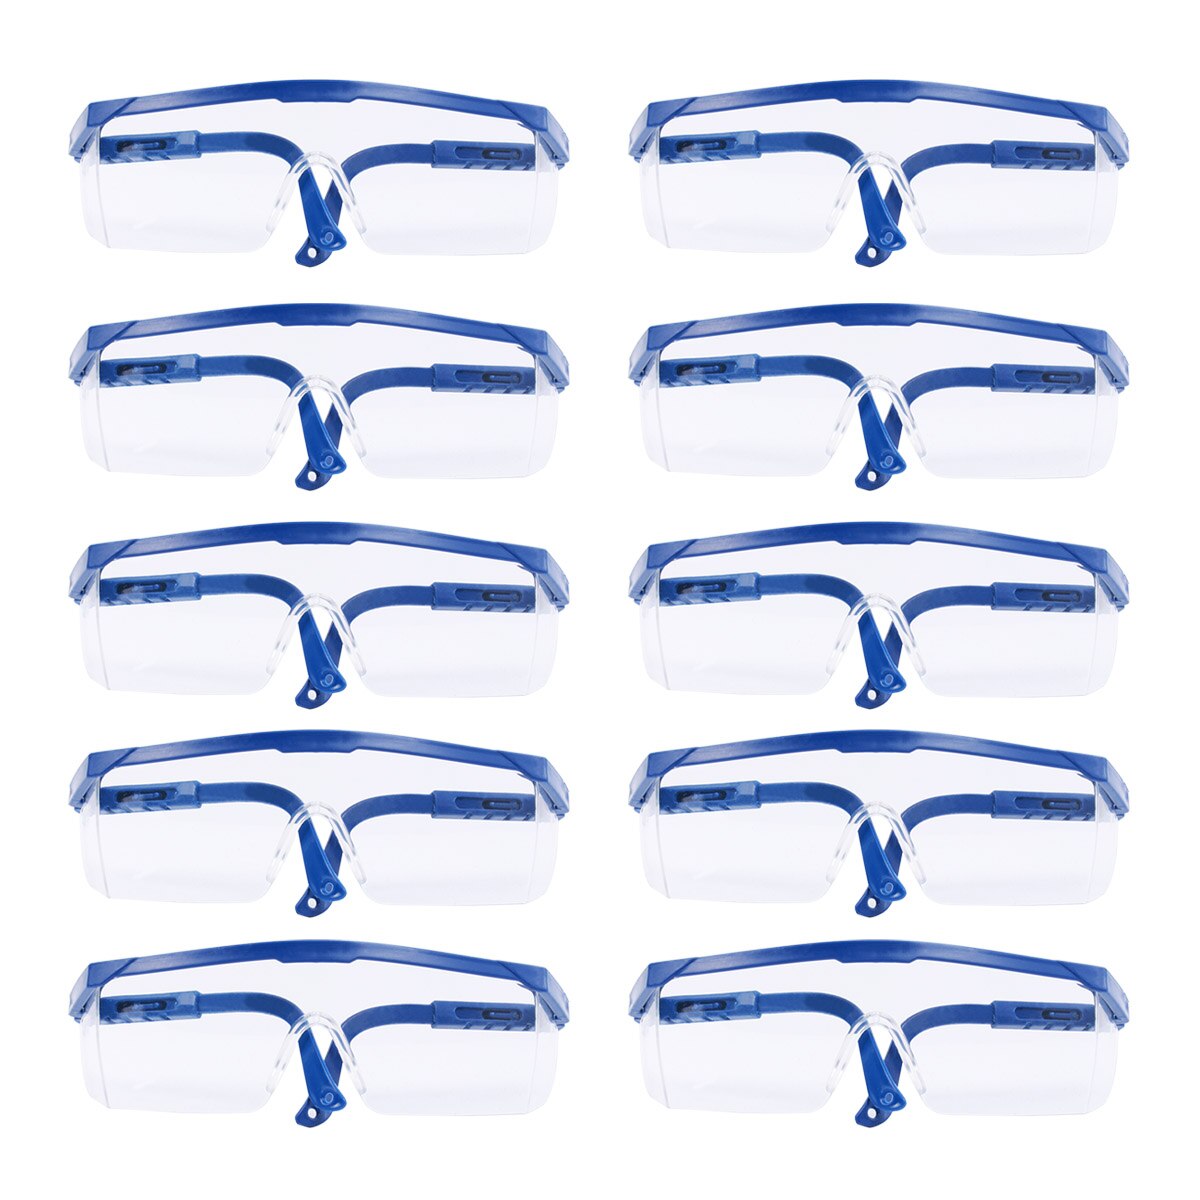 10 Stuks Wegwerp Bril Plastic Glazen Praktische Eenvoudige Home Bril Veiligheidsbril Met Maskers Voor Persoonlijke Bescherming A3